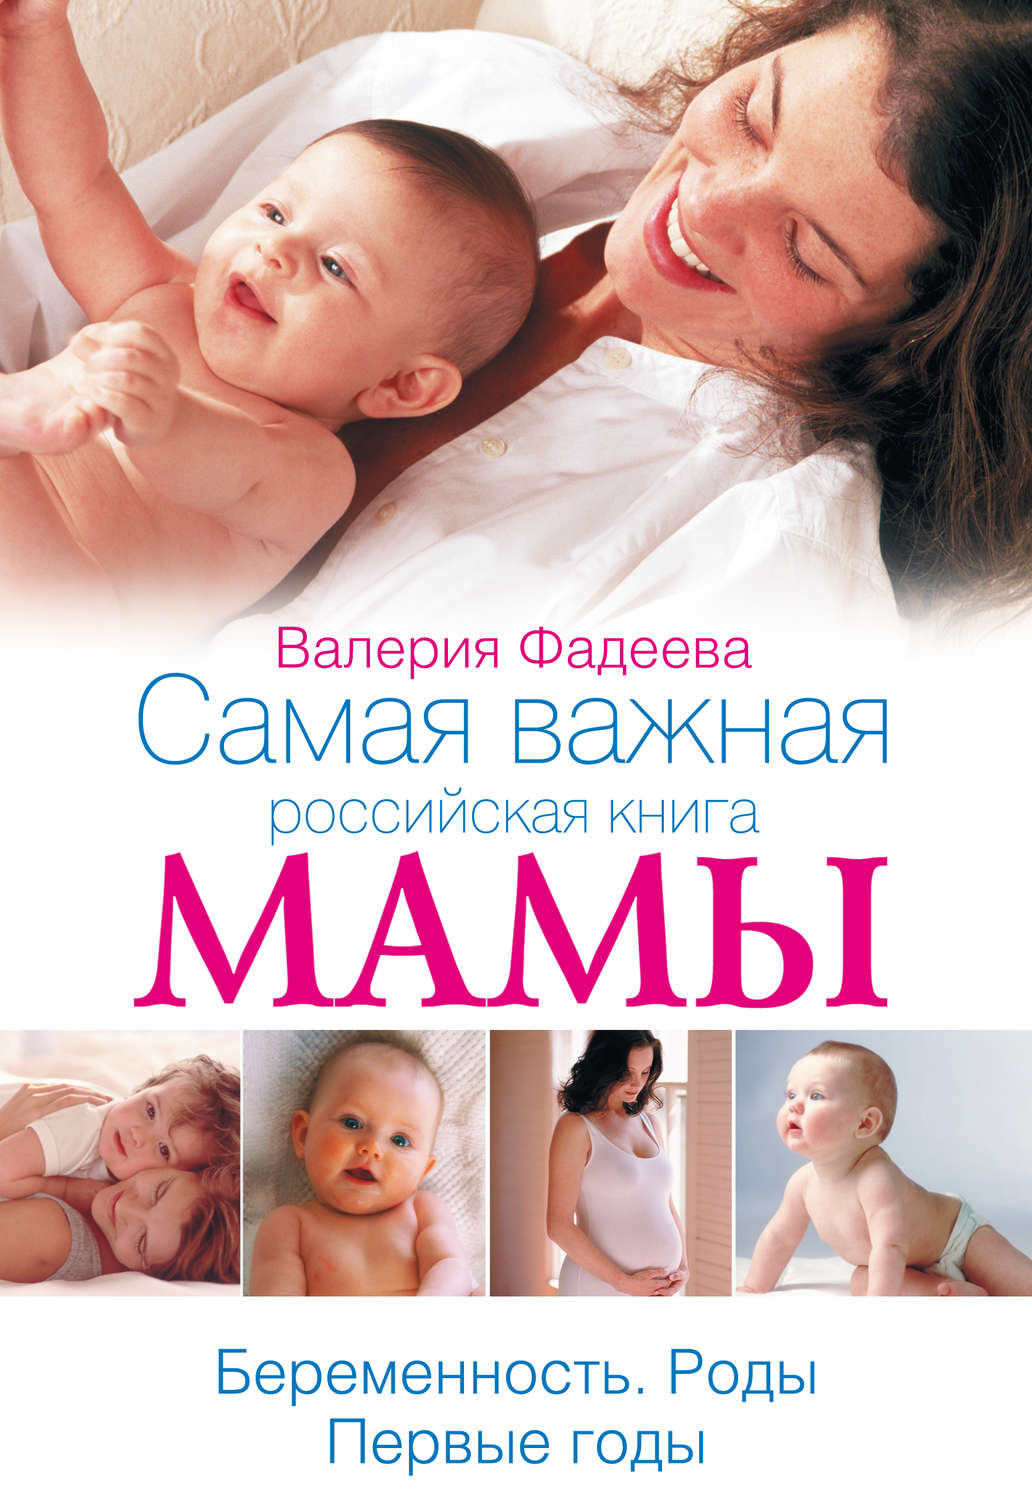 Главная книга российской мамы скачать